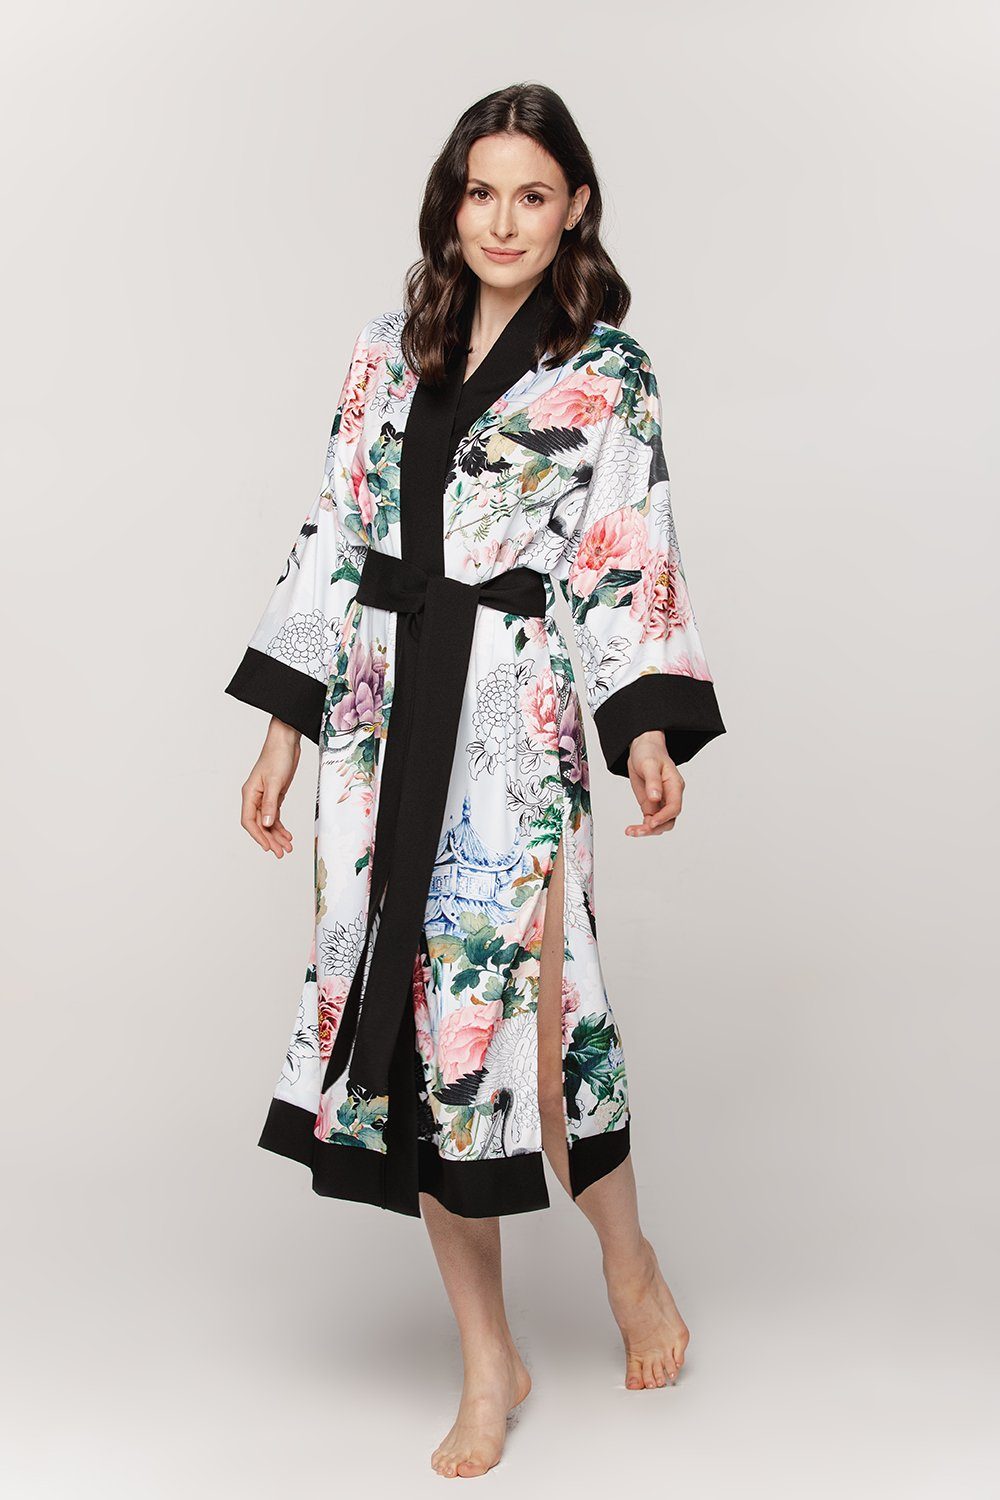 BABEES Kimono Hausmantel Damen Bademantel Strandkleid Kimono Orient Morgenrock